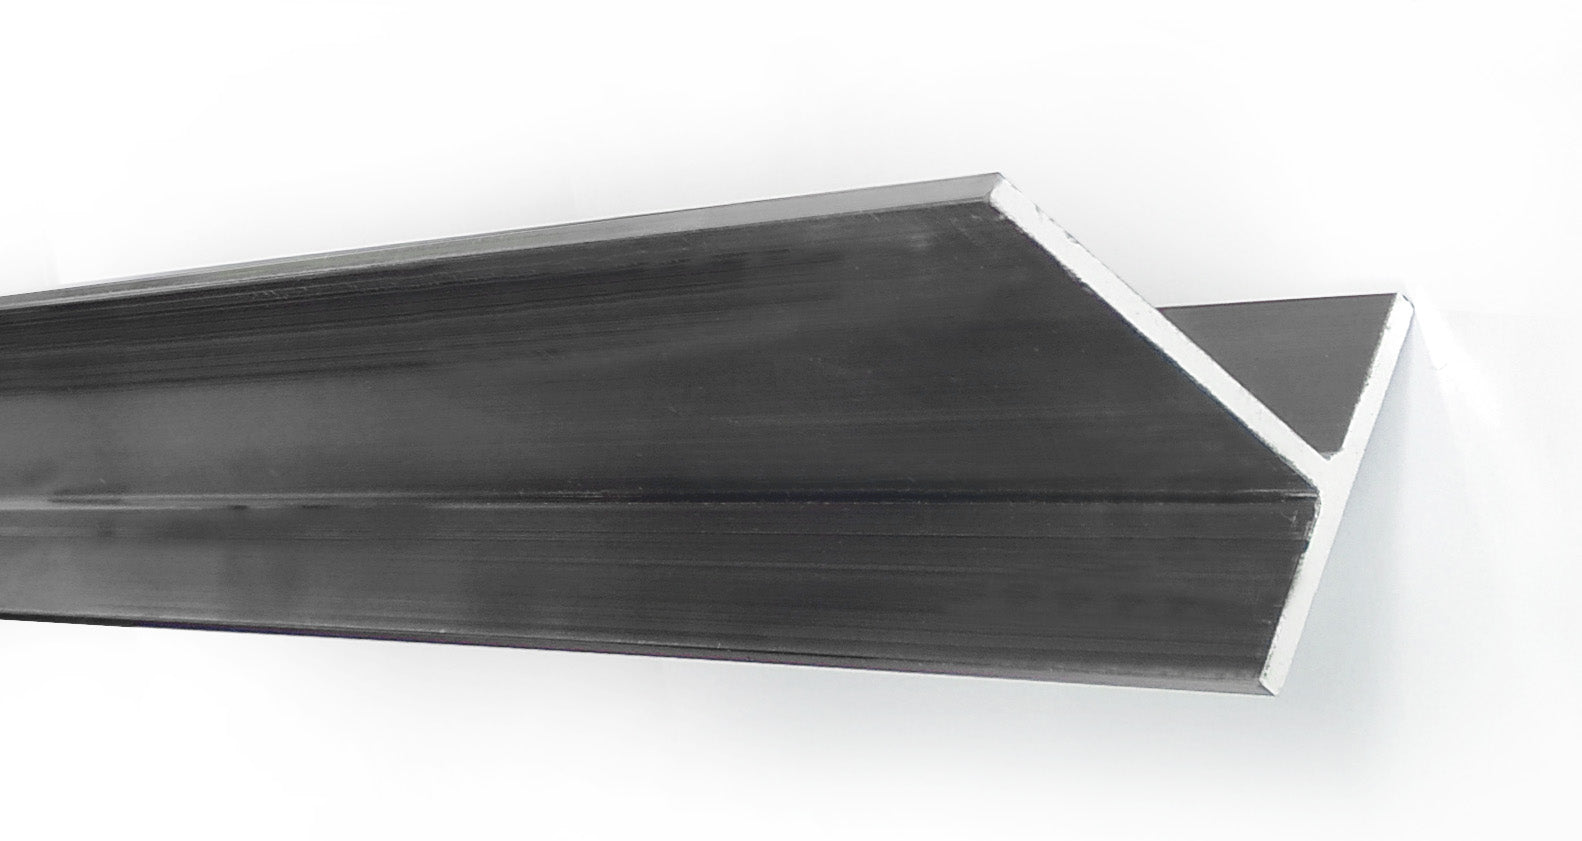 Perfil aluminio estructural (T-slot) 40x40 - Plateado - Cimech 3d